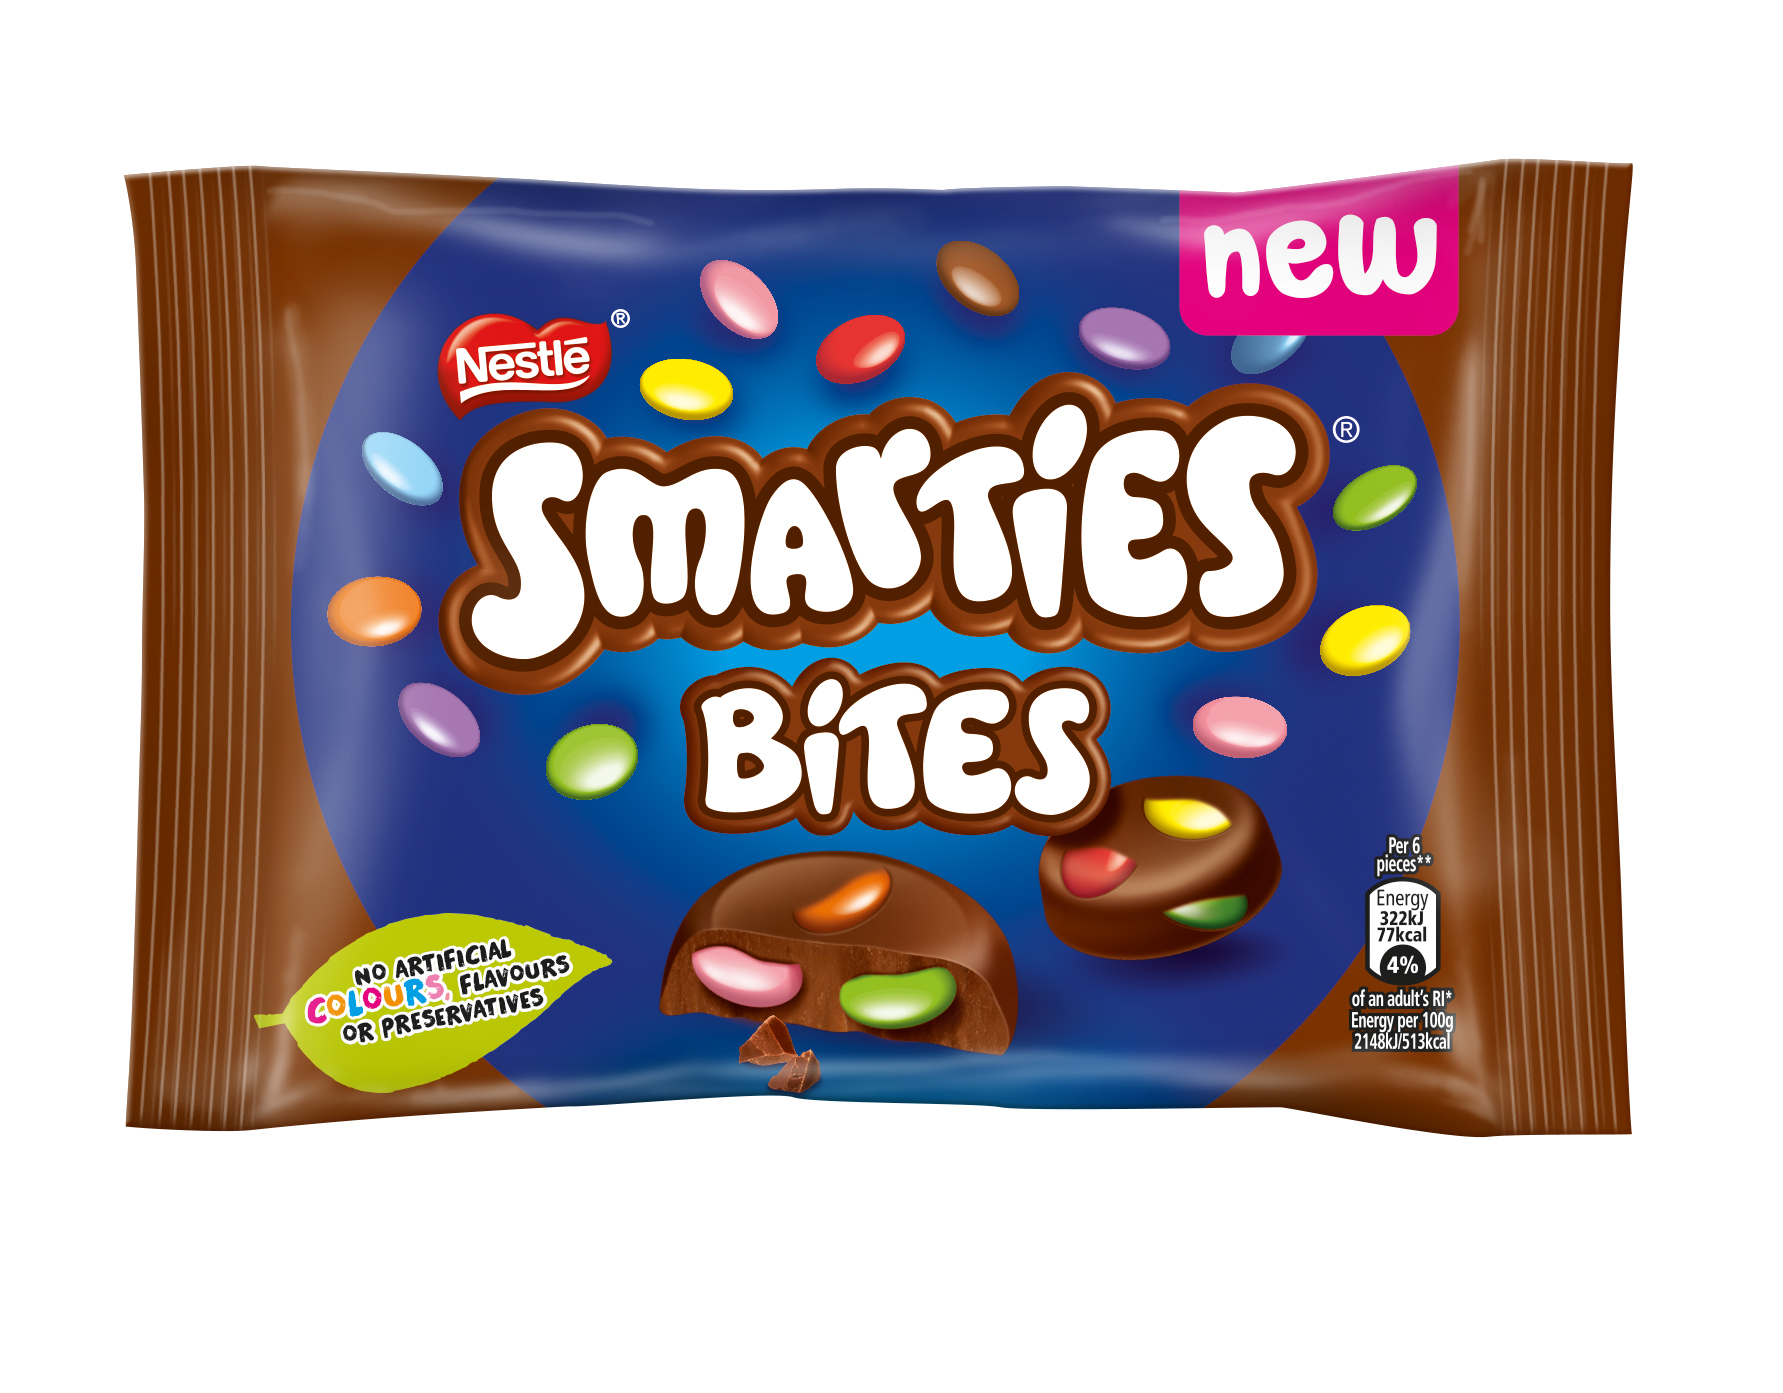 Nestlé launches new Smarties Bites